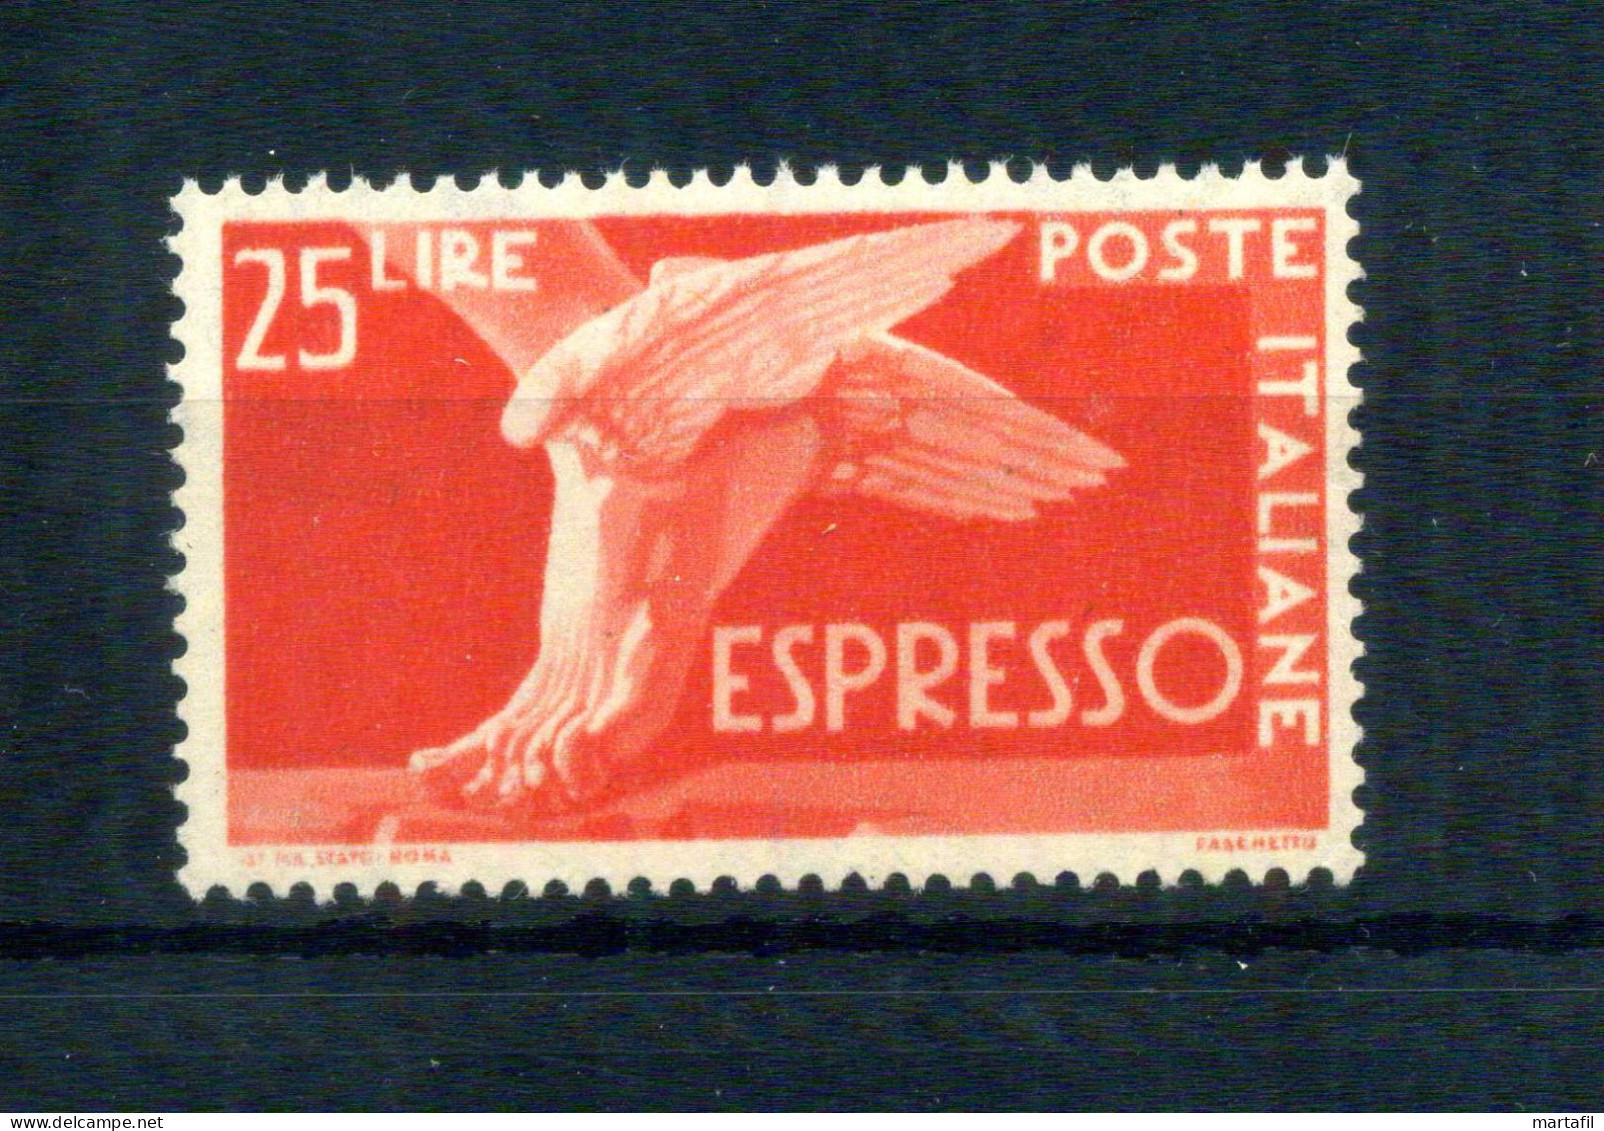 1945-52 Repubblica Espressi/Espresso N.28 MNH ** - Express/pneumatic Mail